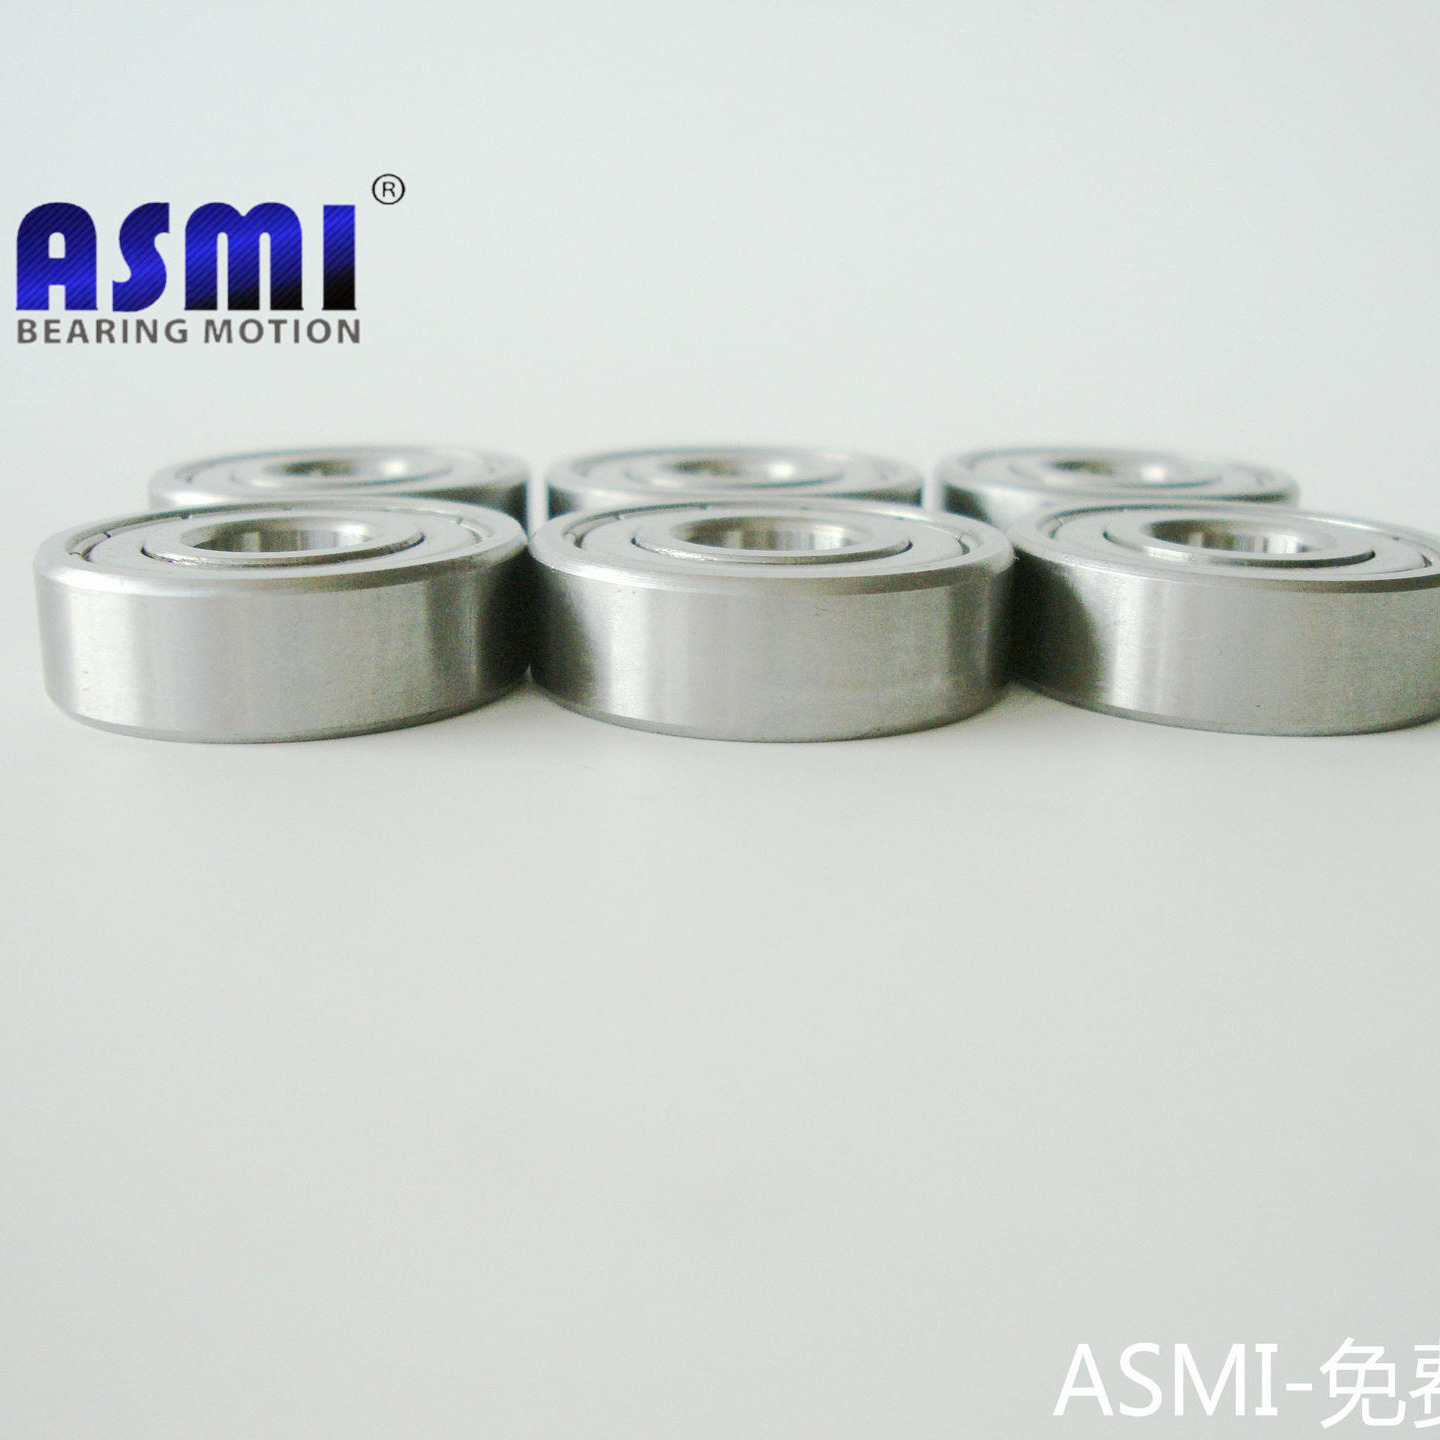 微型不锈钢轴承无锡ASMI生产厂家 江苏不锈钢轴承品牌厂家S686ZZ S696ZZ S606ZZ S626ZZ